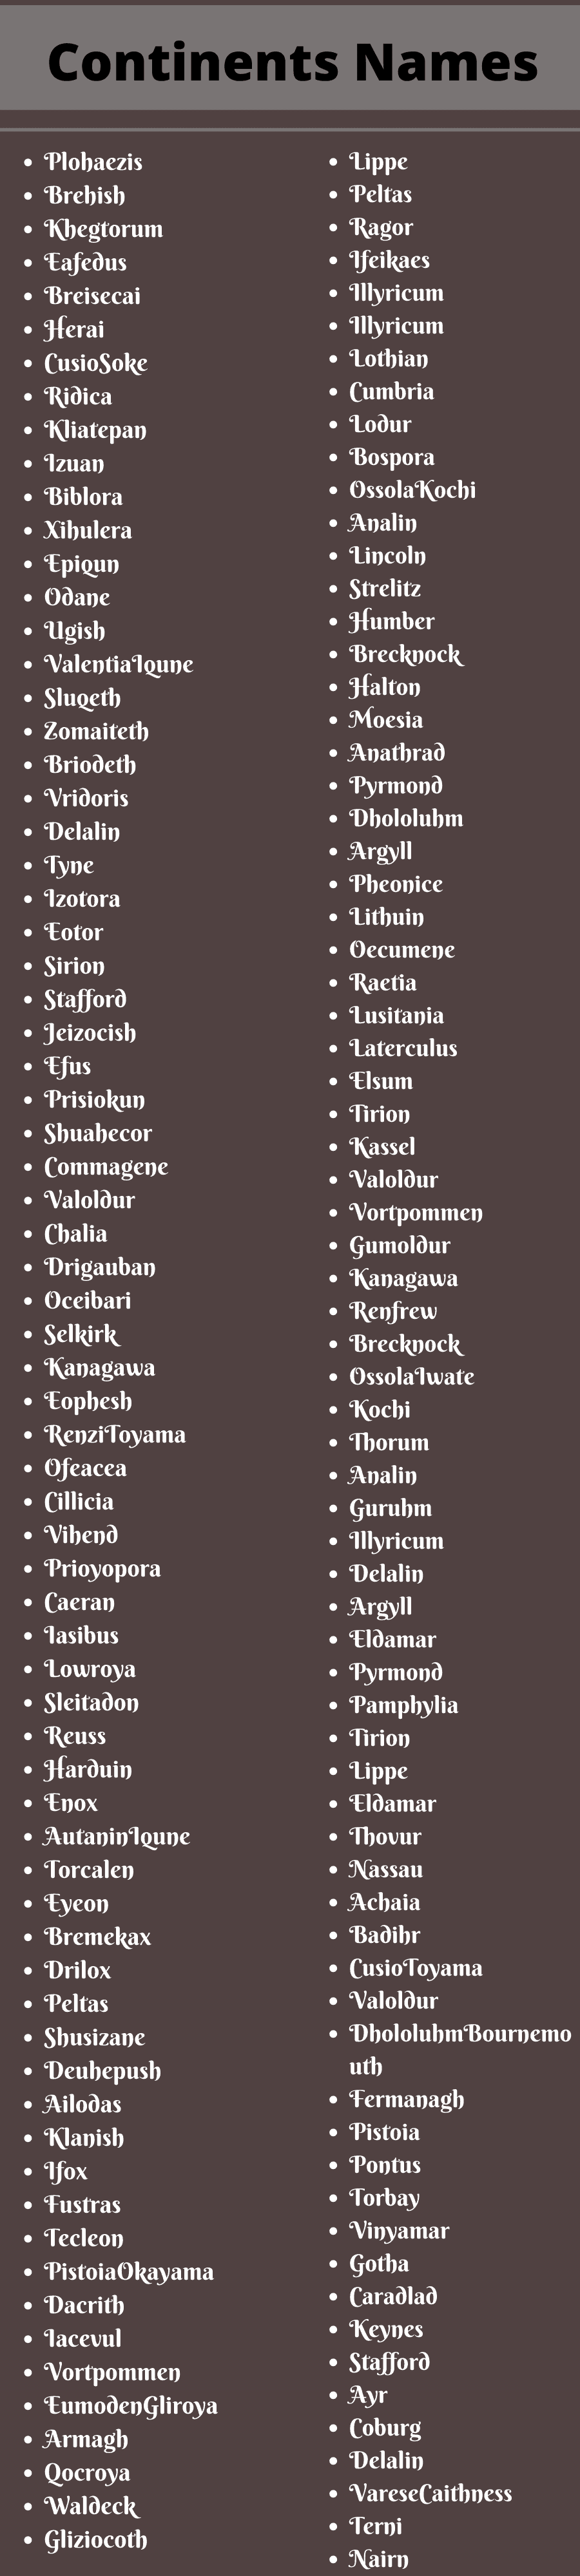 Continents Names 